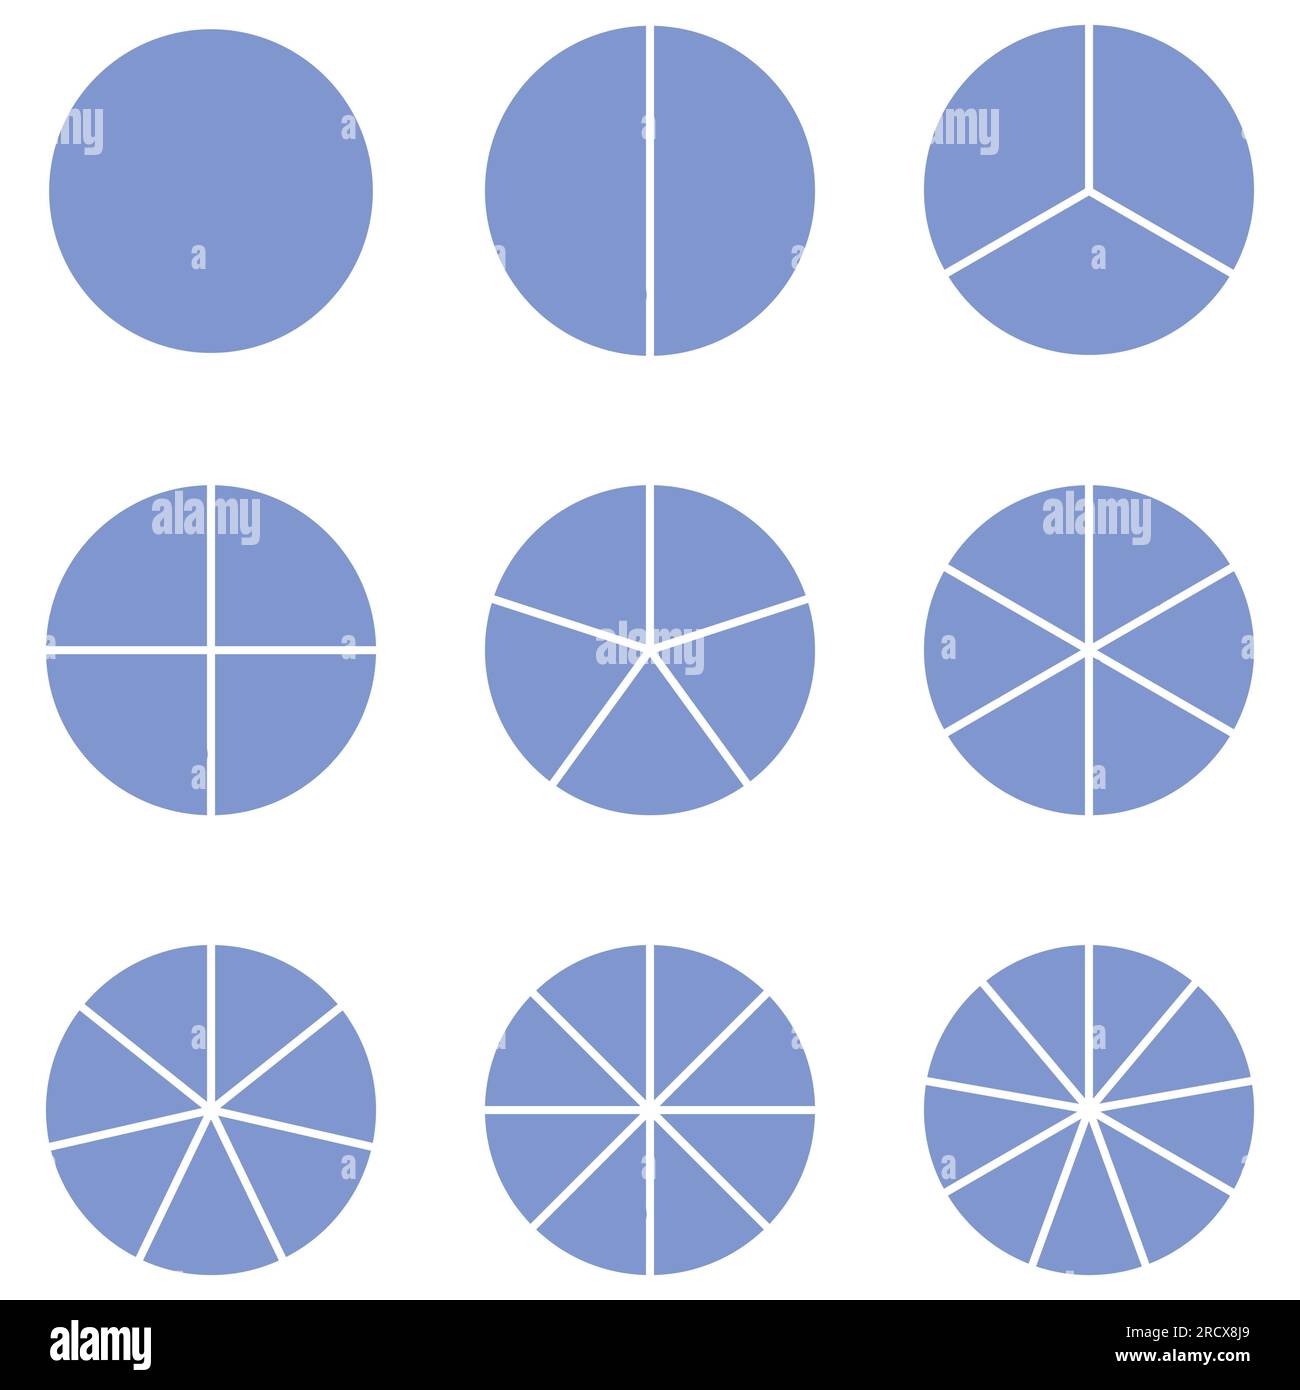 Gruppo di cerchi di frazione con la stessa dimensione. Torta frazionata divisa in fette. Interi, metà, terzi, quarti, quinti, sesti, sedici, ottavi e nono Illustrazione Vettoriale